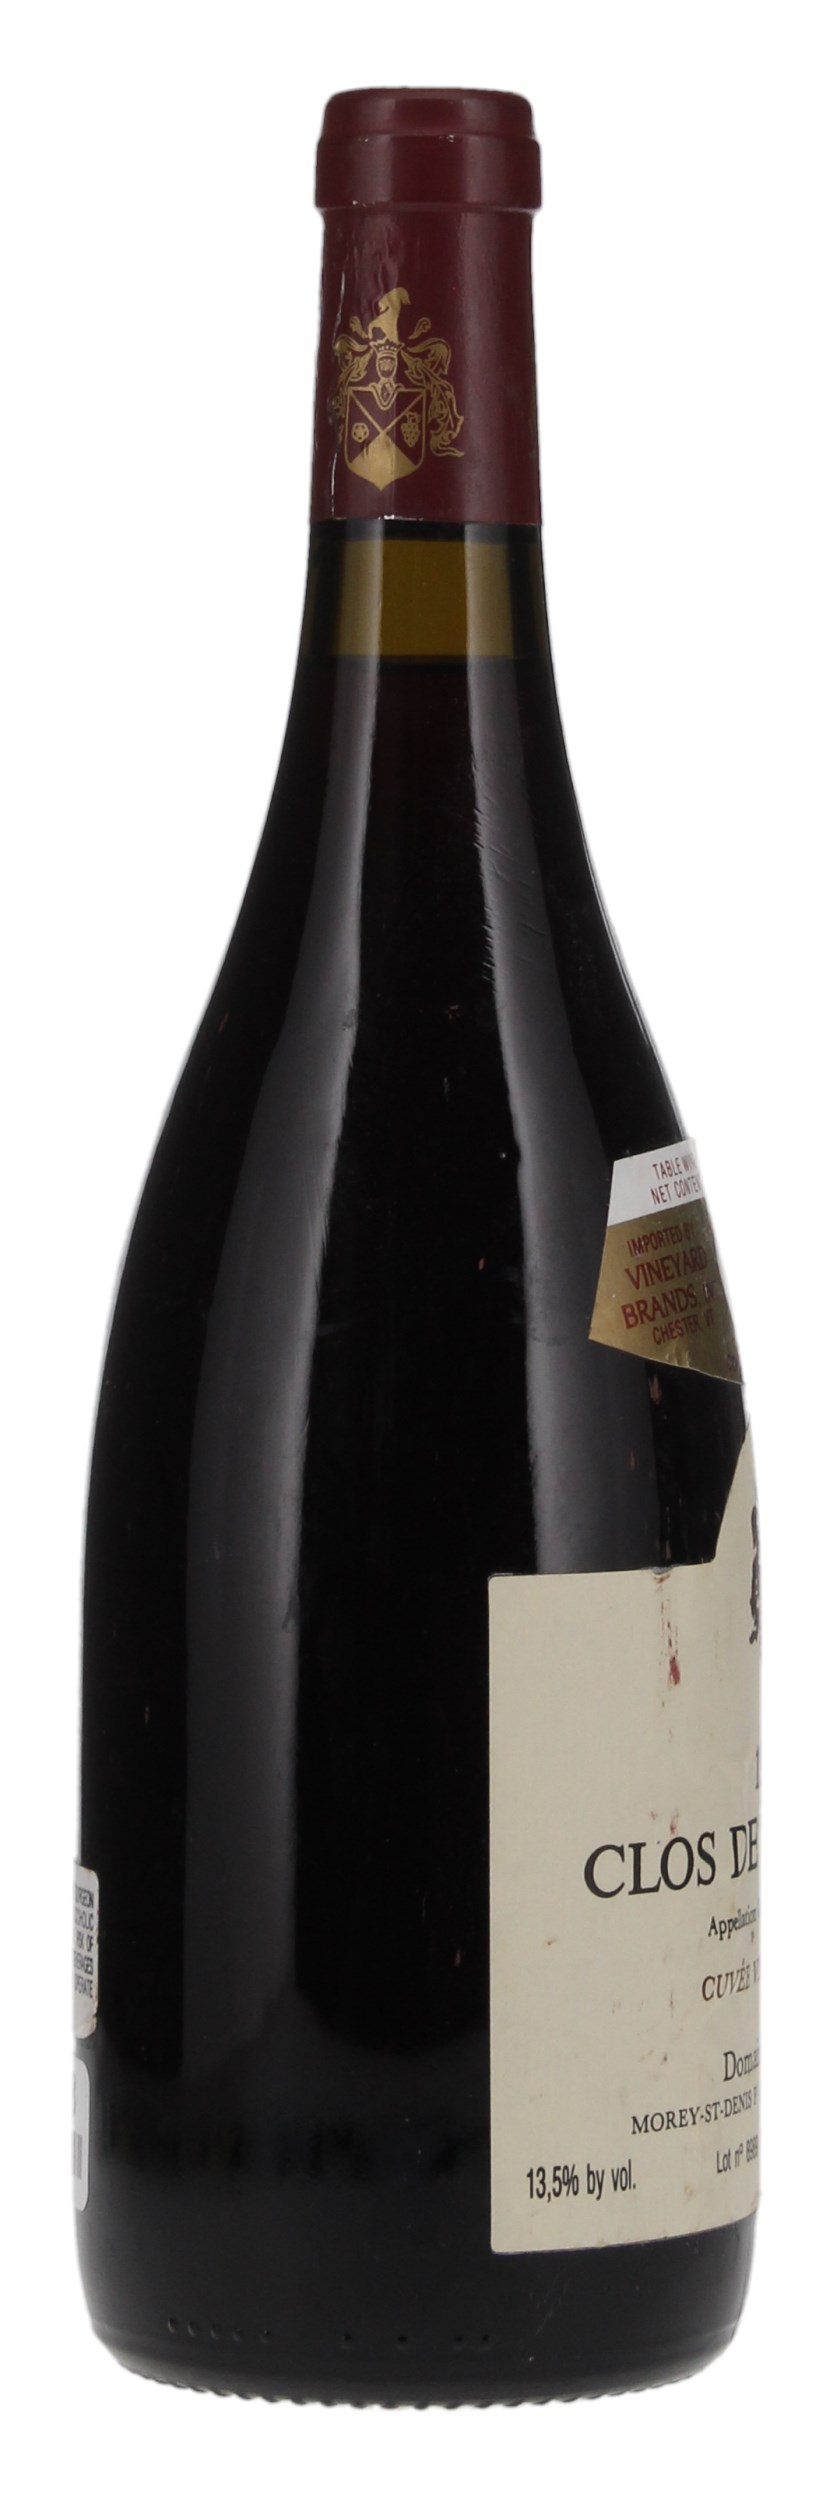 1989 Domaine Ponsot Clos de la Roche Vieilles Vignes, 750ml